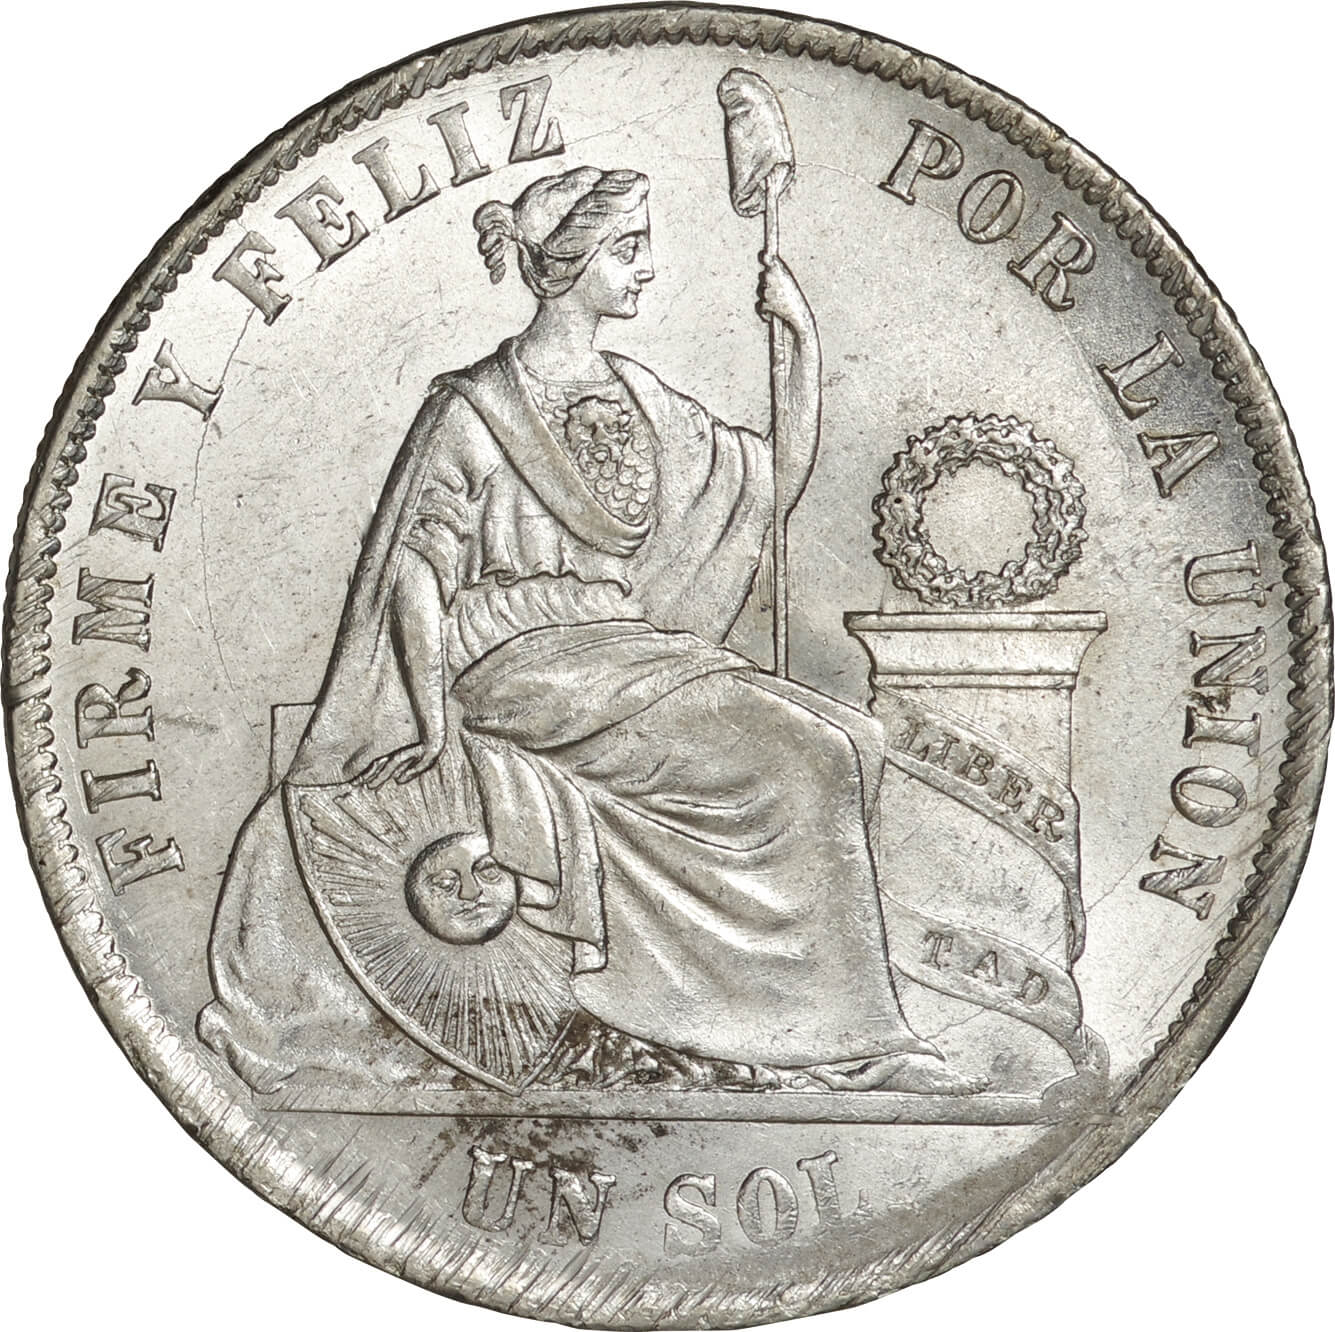 ペルー-Republic of Peru. 1872. Silver. 1ソル. 未使用. UNC. 女神座像 